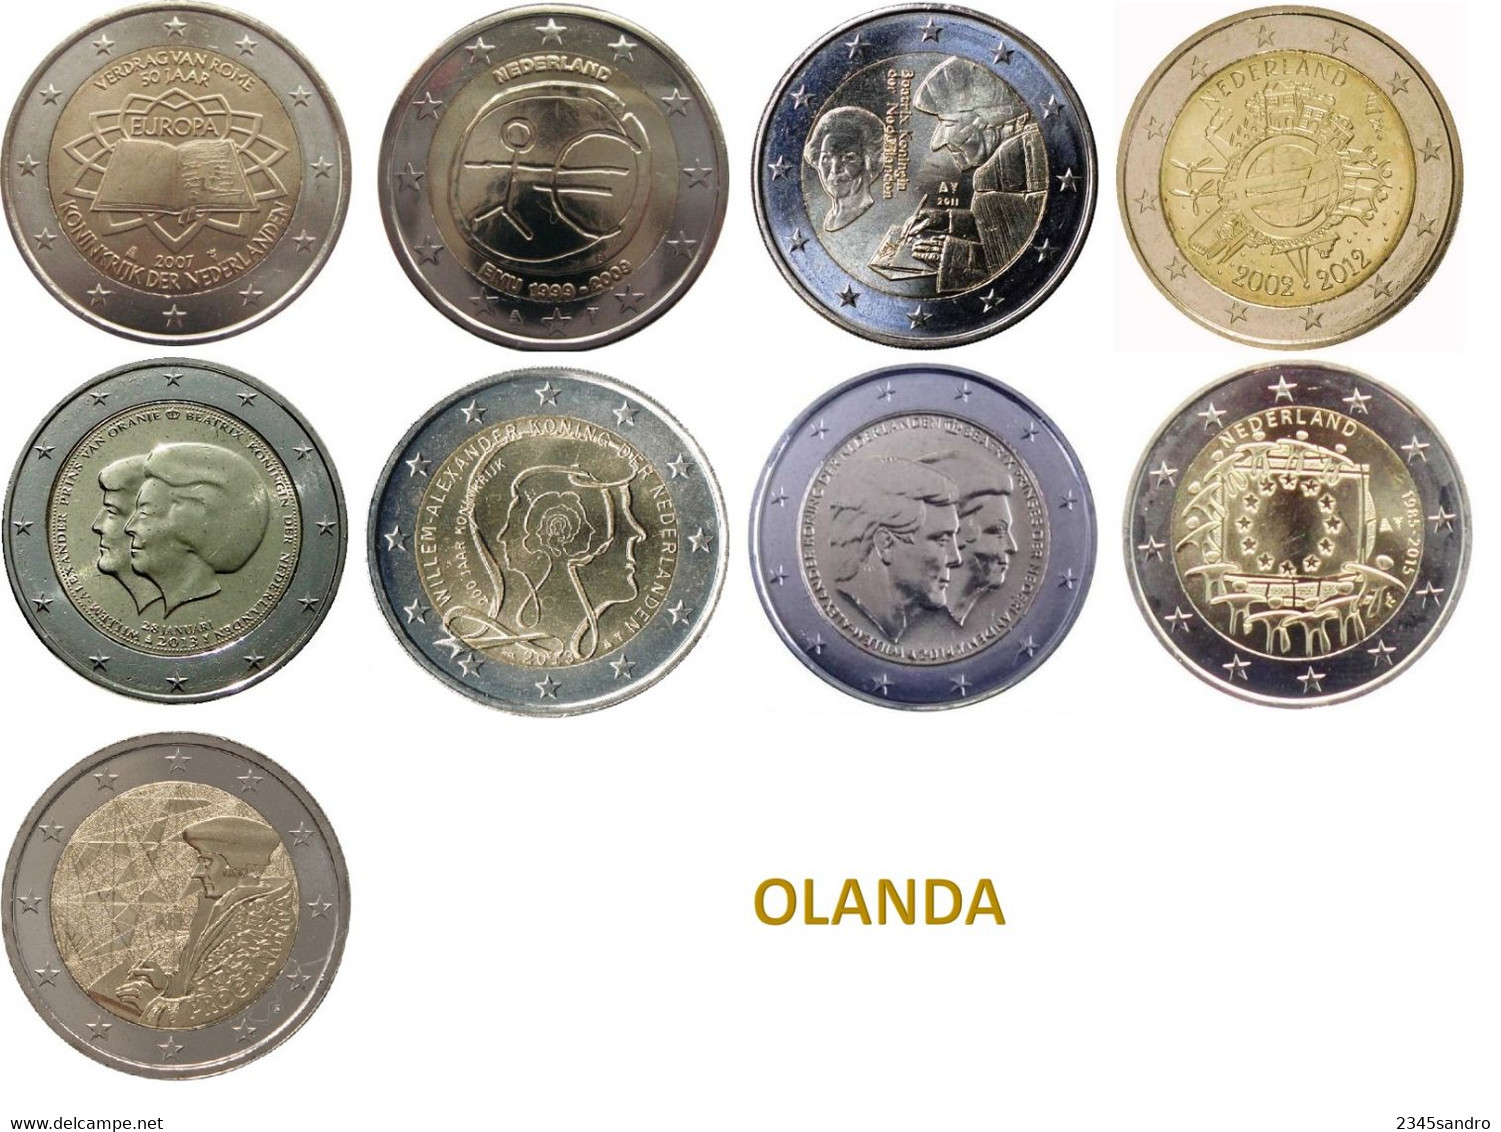 OLANDA COLLEZIONE COMPLETA 2 € EURO COMMEMORATIVE 2009-2022 FDC (9 MONETE) - Sammlungen